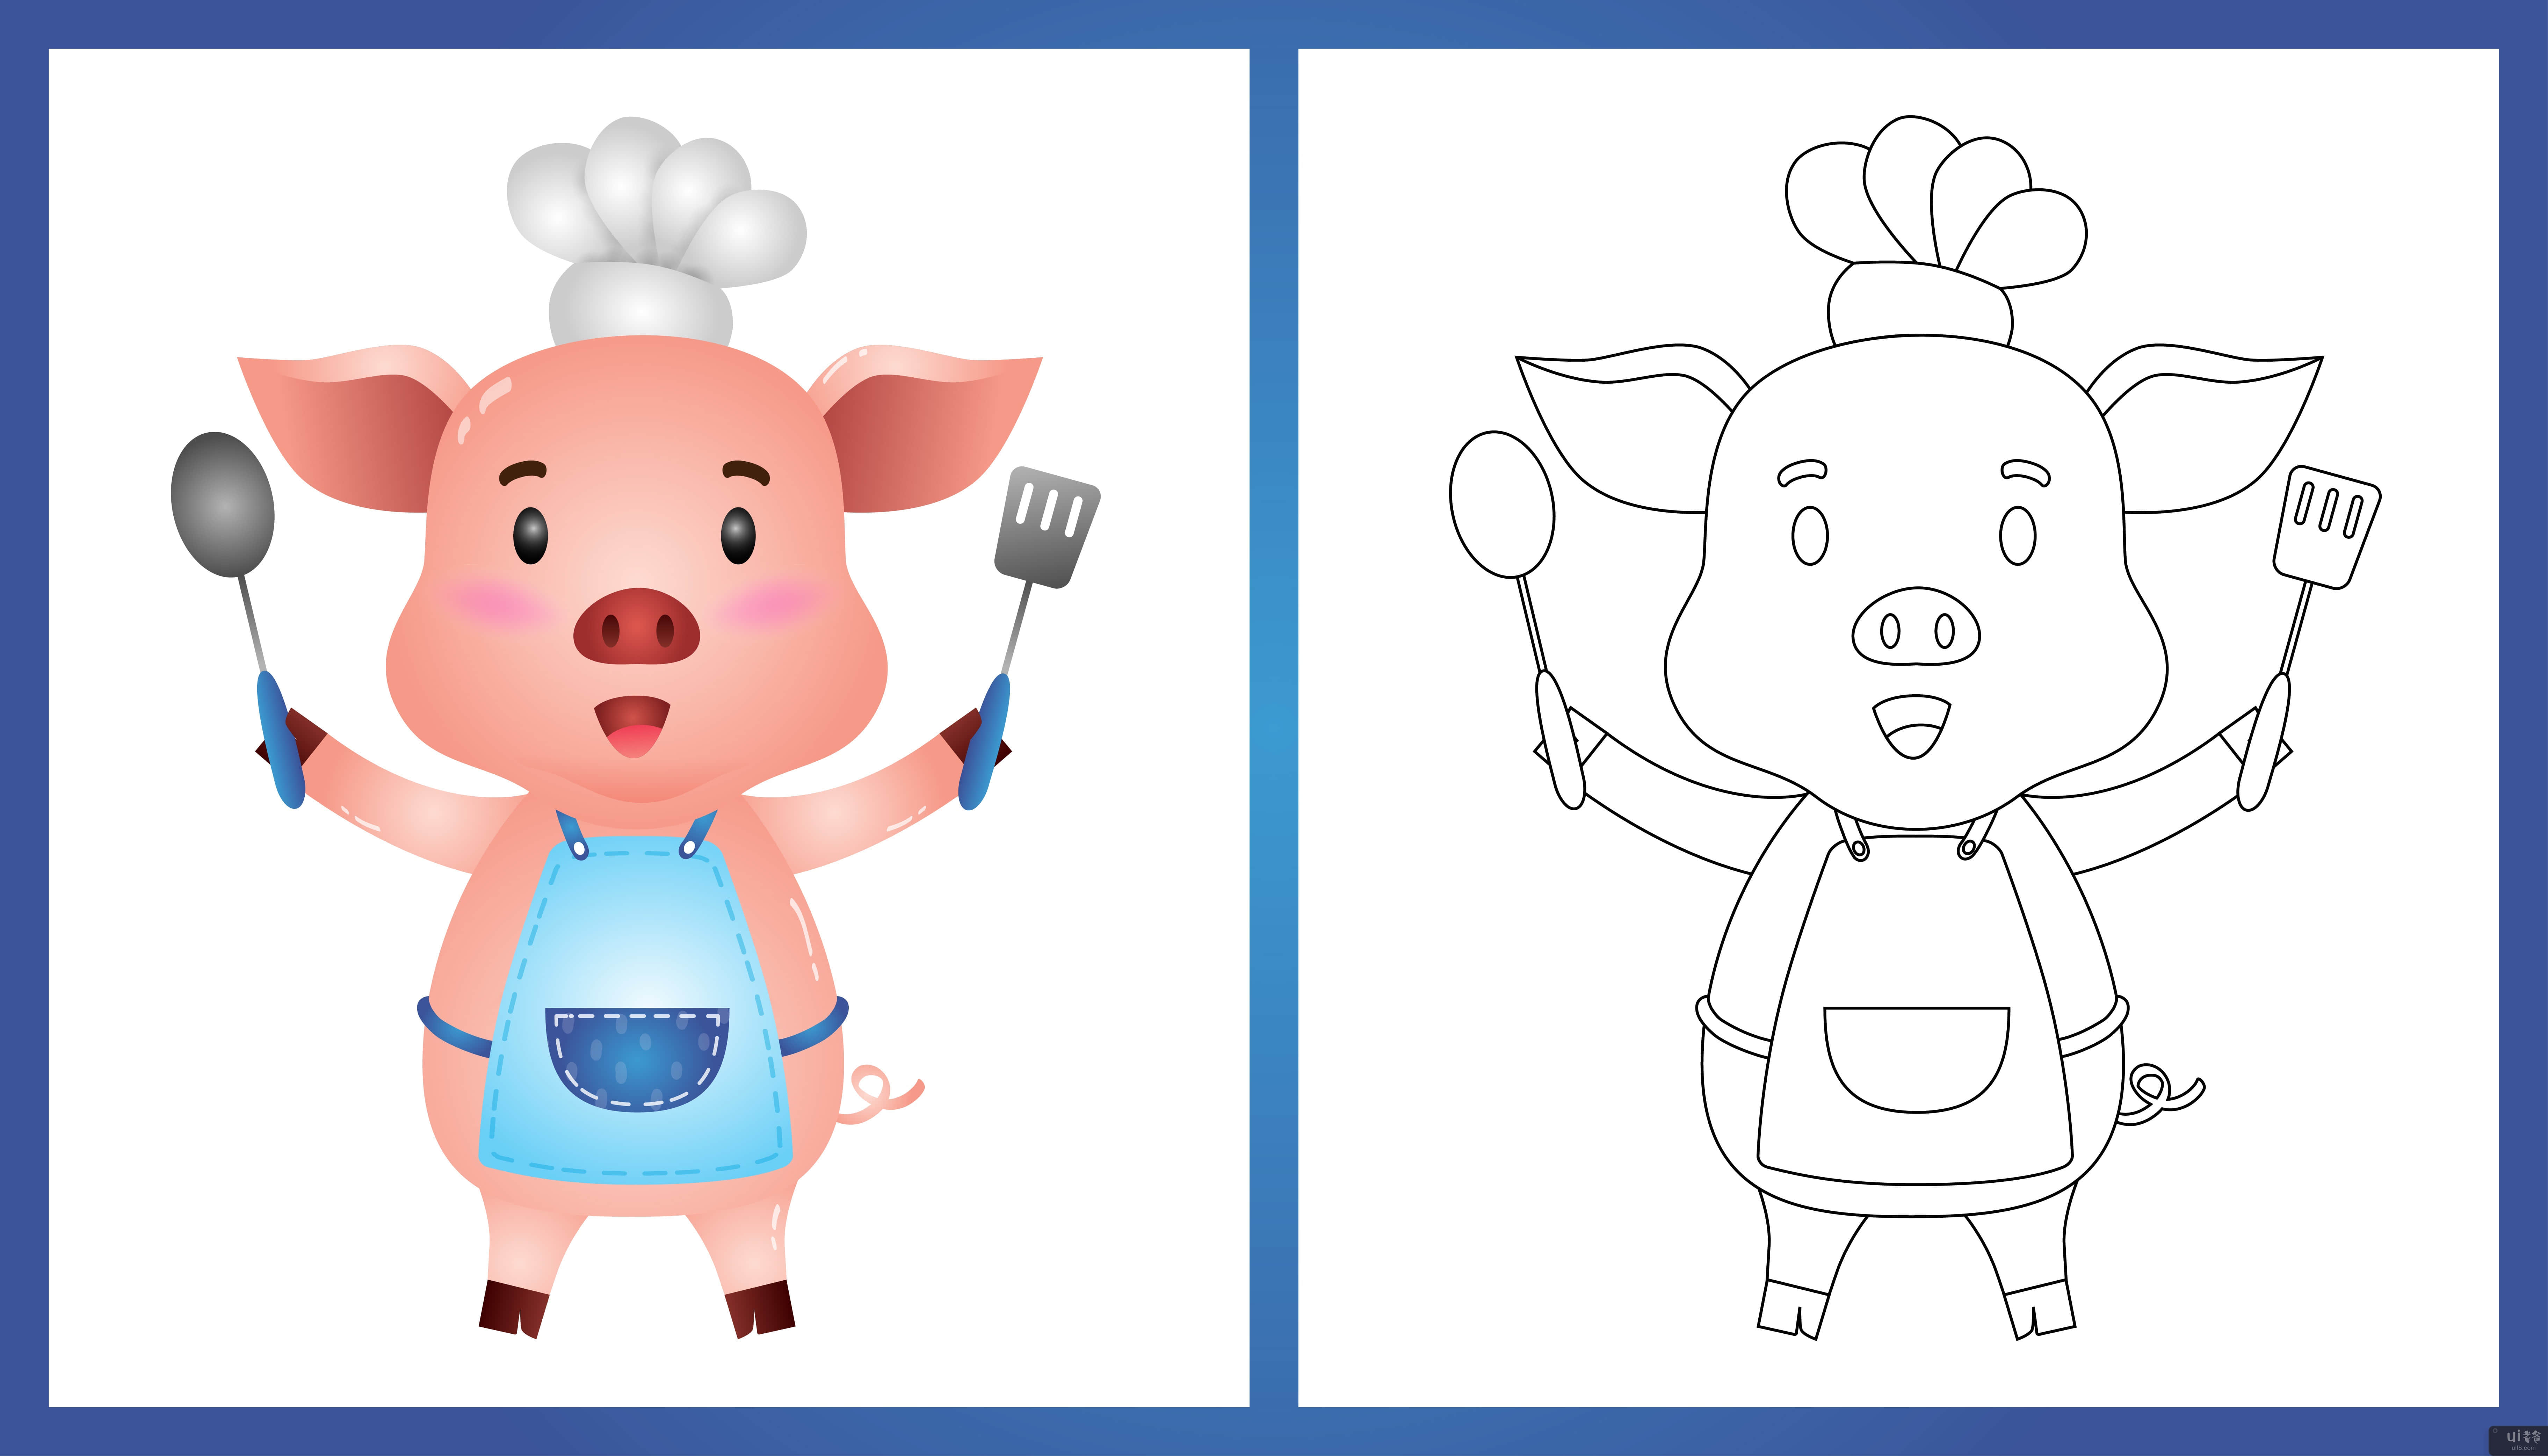 与一位可爱的小猪厨师一起着色书(coloring book with a cute little pig chef)插图2